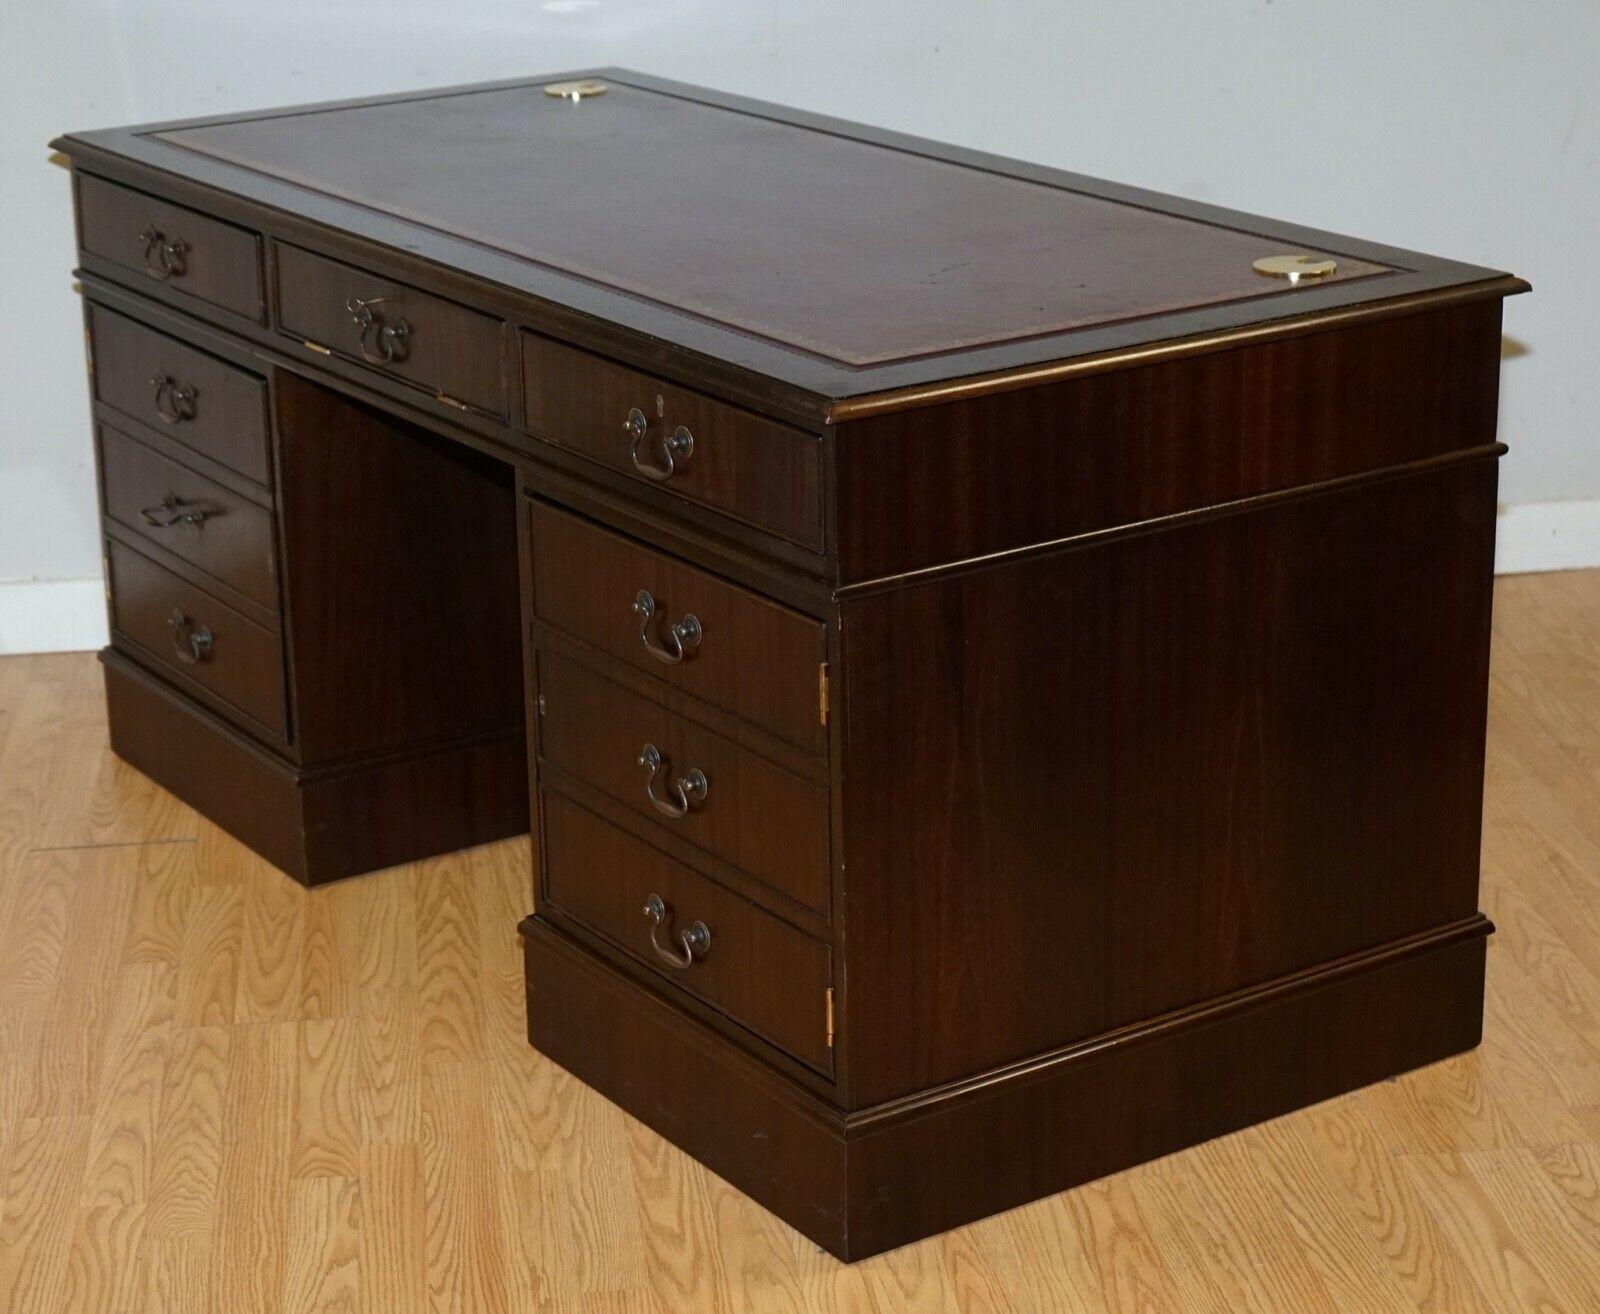 Hardwood Twin Pedestal Partner Desk Leather Top Designed to House Computer 7